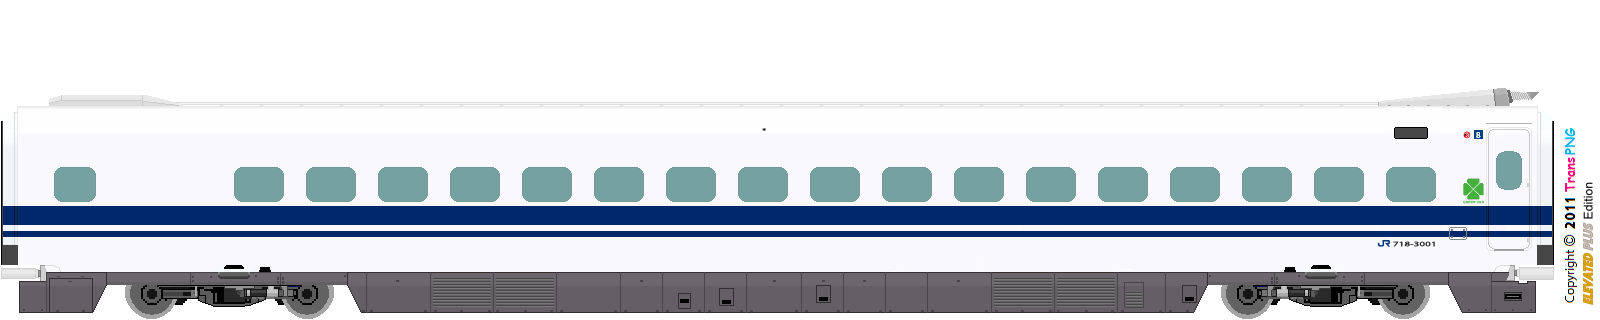 [9012] West Japan Railway 52287845984_5c8c8c23c1_o